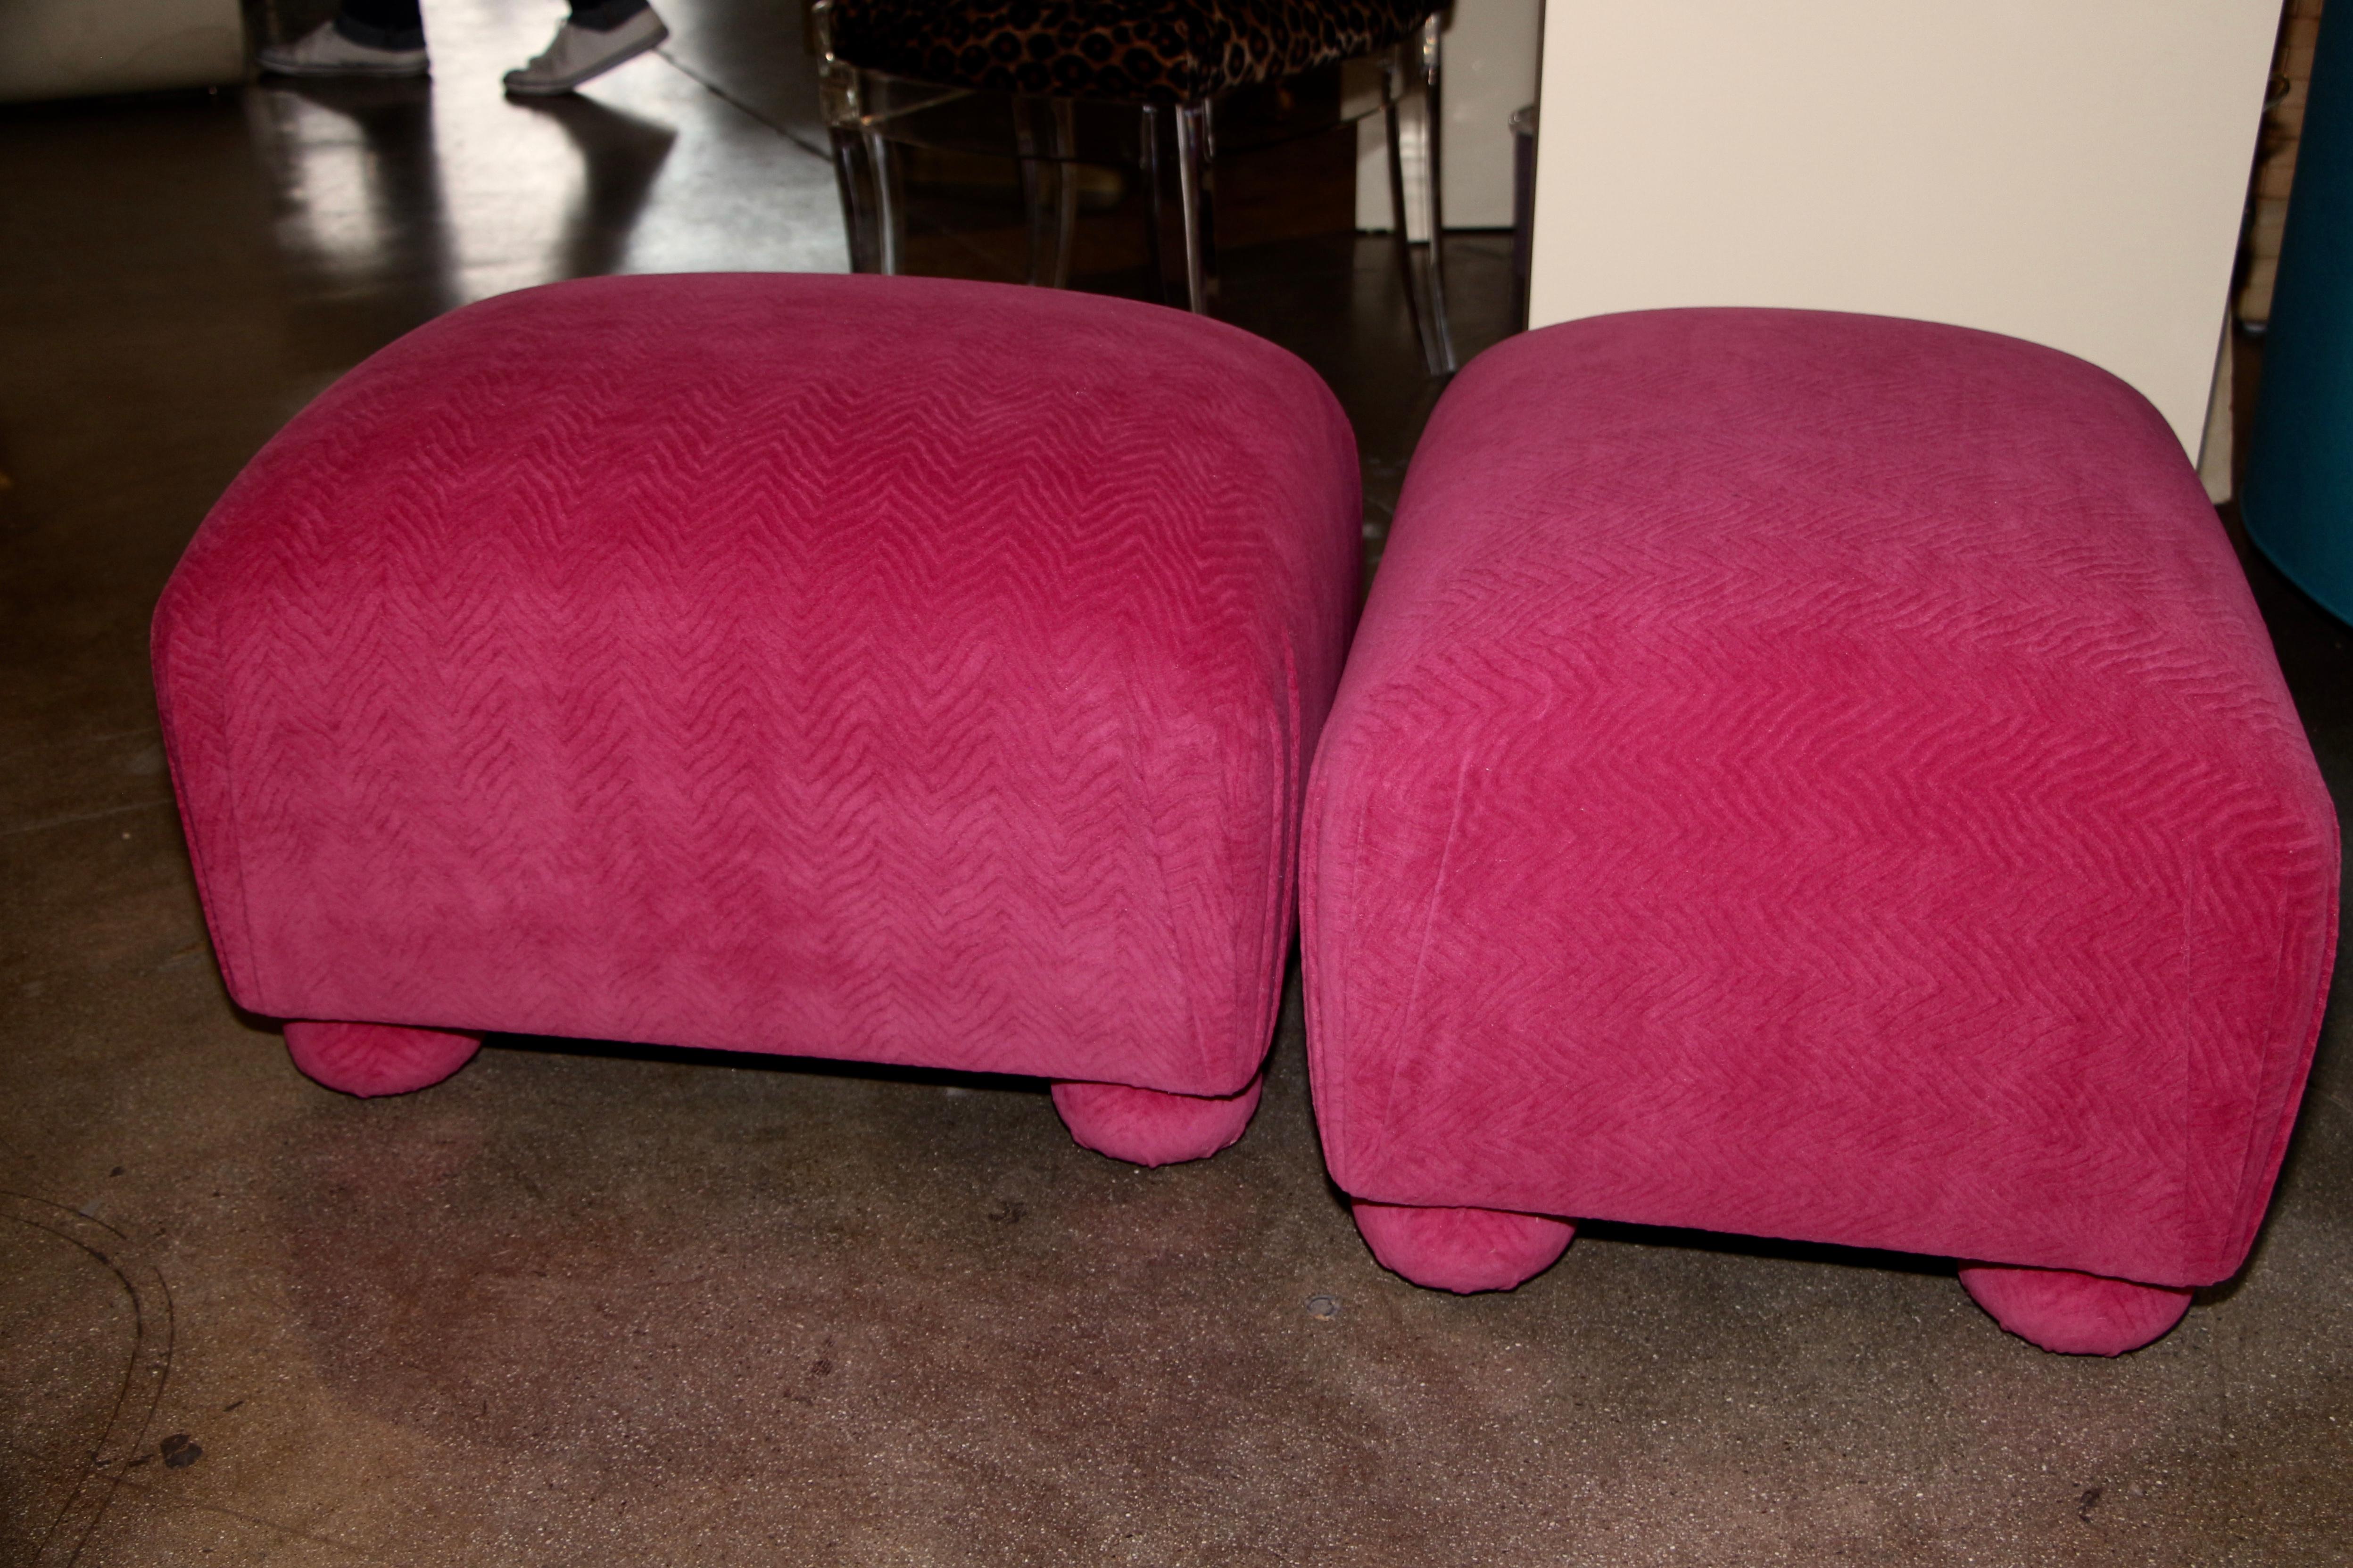 Ein schönes Paar von Vintage-Ottomane neu gepolstert in einem schönen rosa Fuschia Wolle Mohair Stoff, mit einem leichten Muster zu ihm. Sie sind äußerst robust. Sie können auch als Hocker für zusätzliche Sitzgelegenheiten verwendet werden.